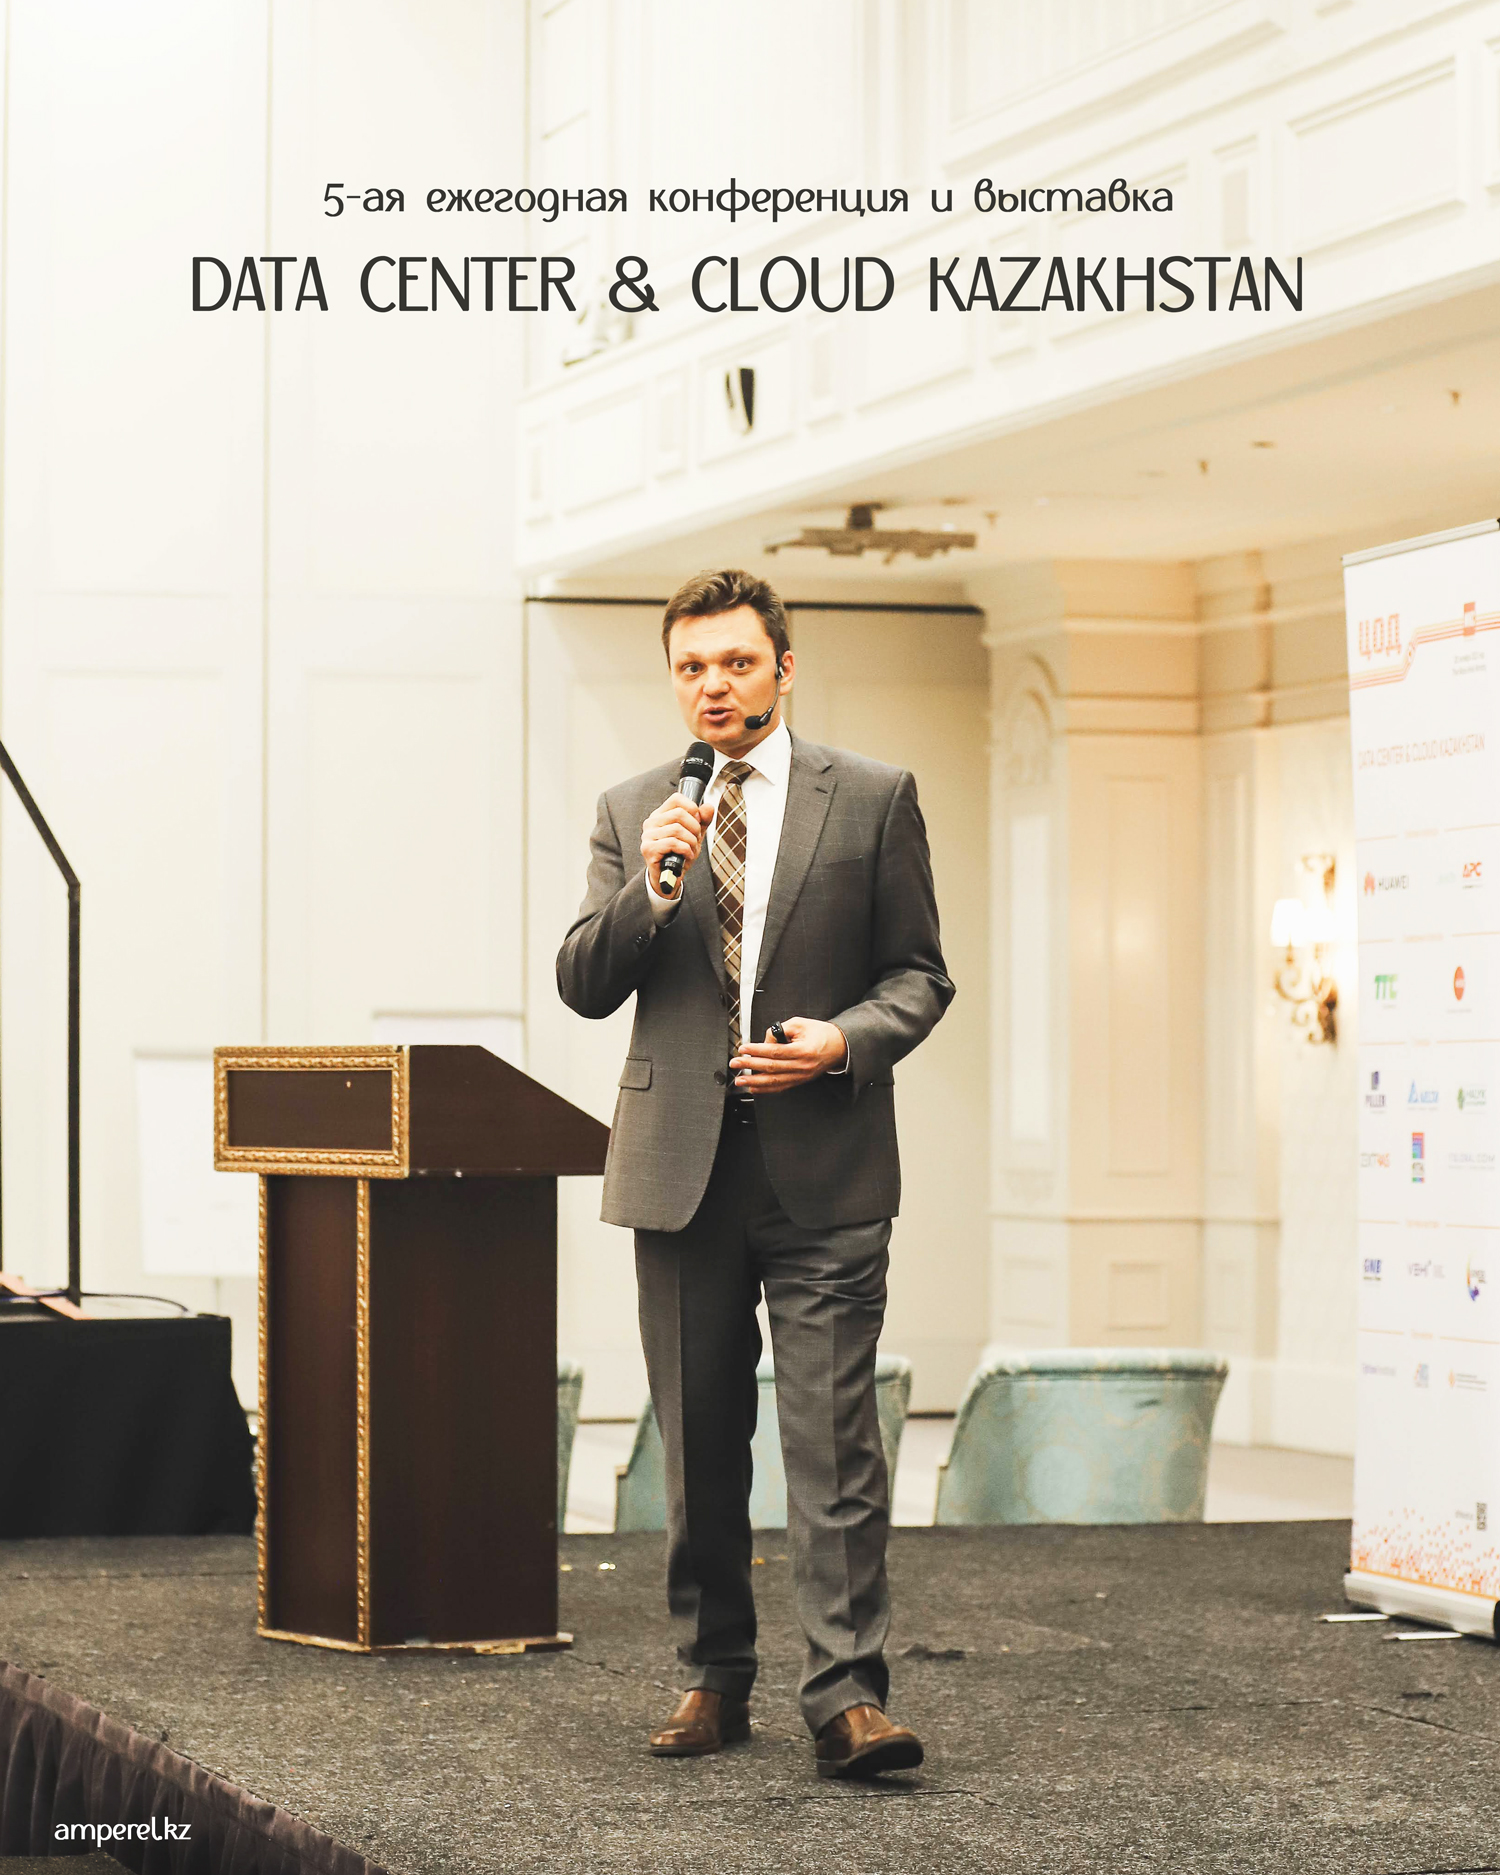 Data Center & Cloud Kazakhstan